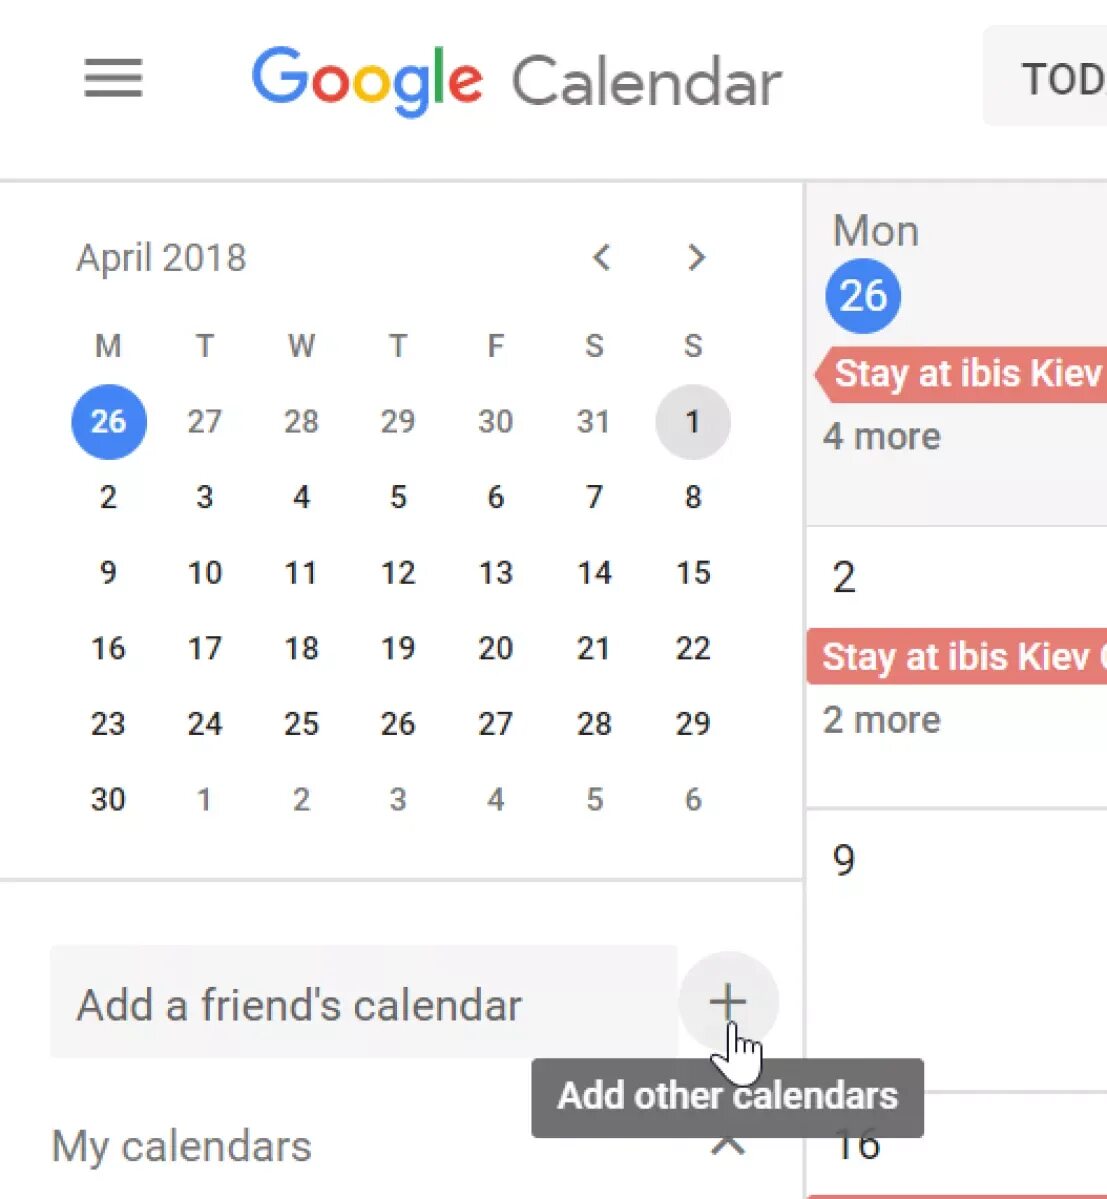 Гугл календарь. Календарь Google фото. Календарь гугл в мобильном. Красивый гугл календарь. Гугл календари вход в личный